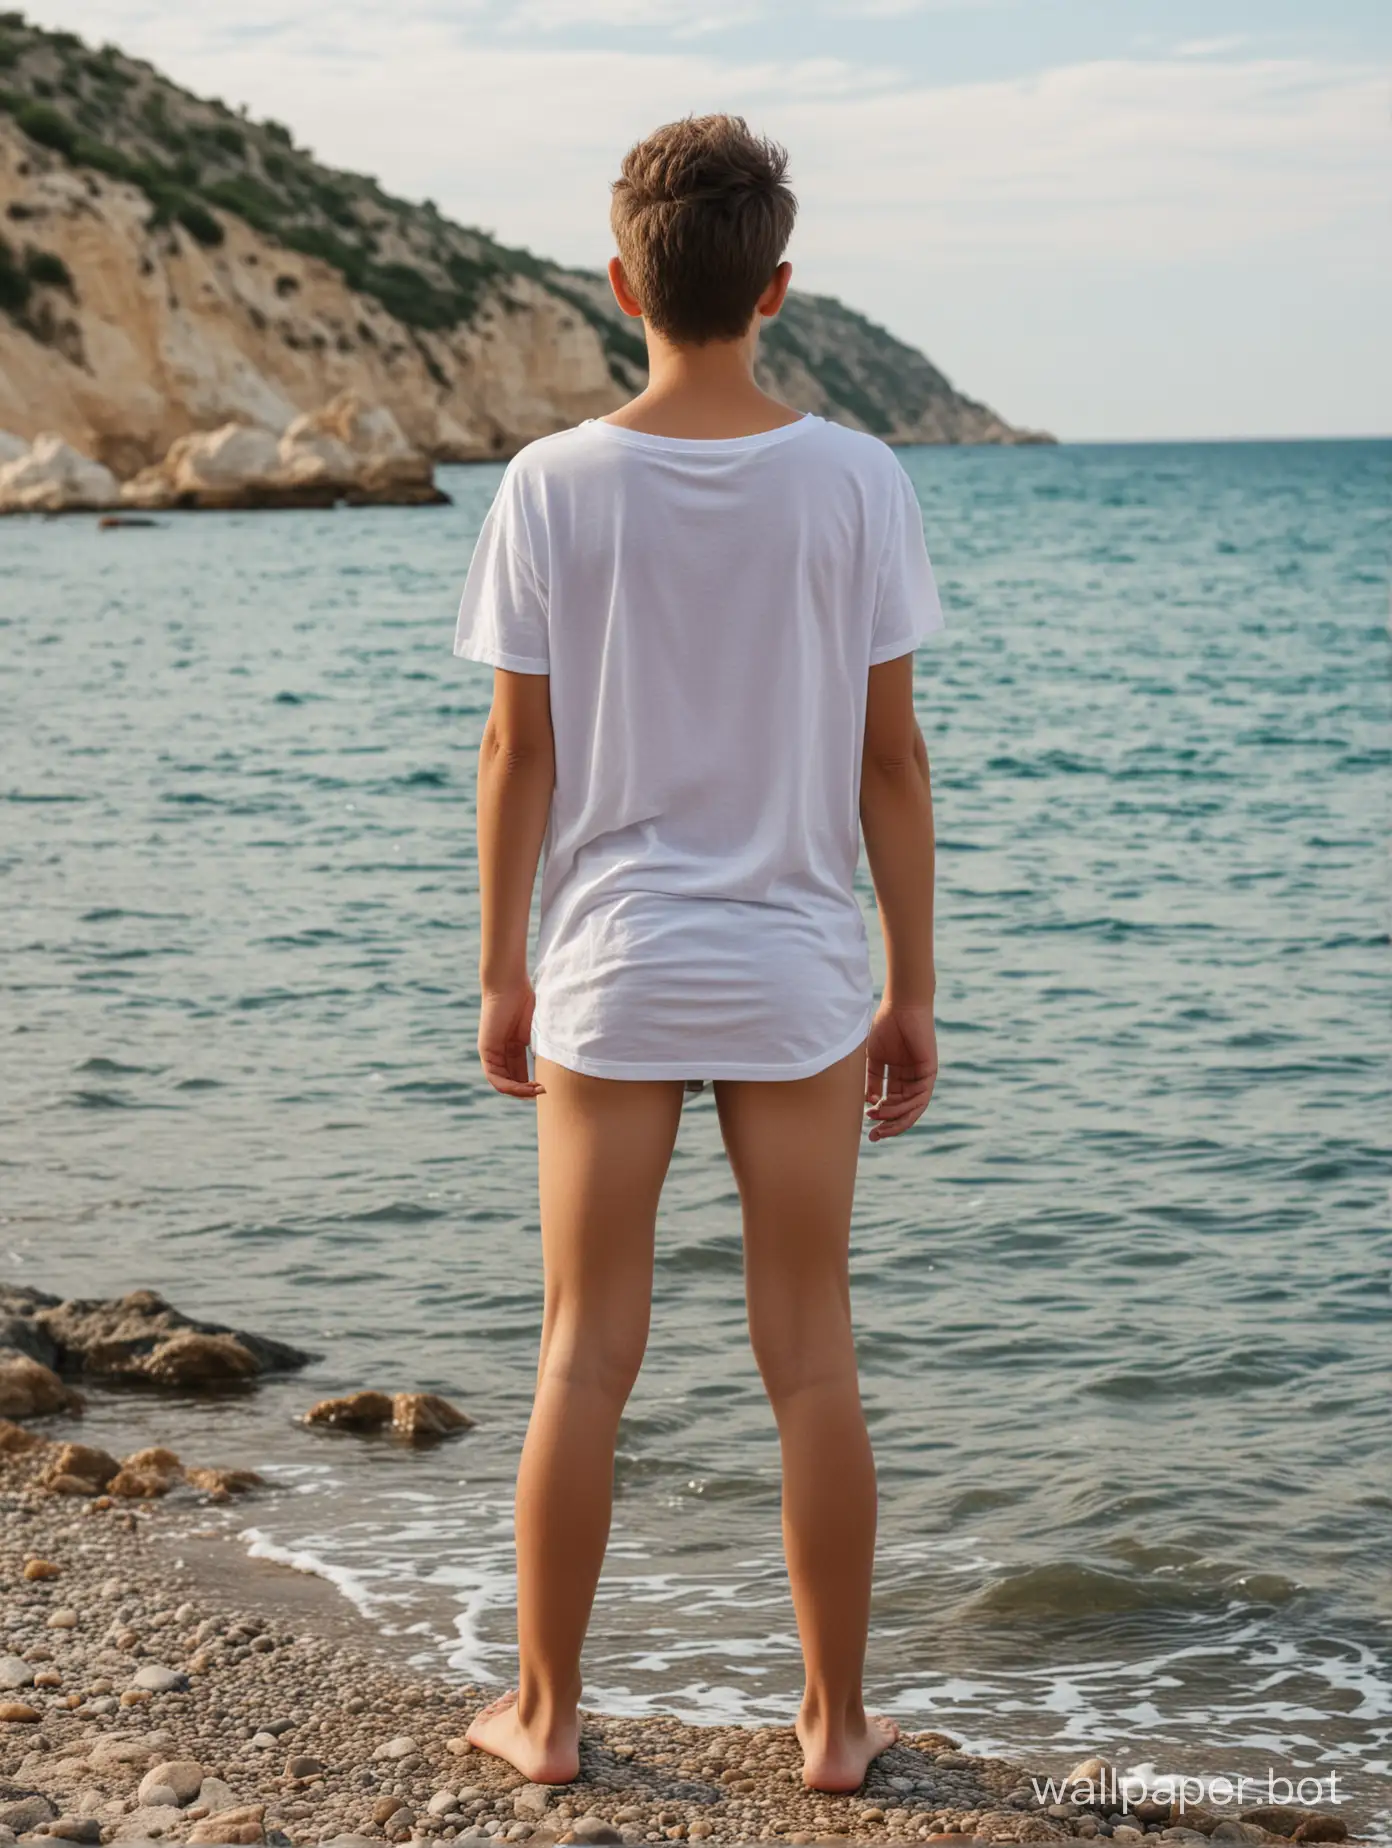 голый мальчик 13 лет в одной футболке в Крыму у моря, вид сзади, в полный рост, динамичные позы, люди рядом, голый мальчик